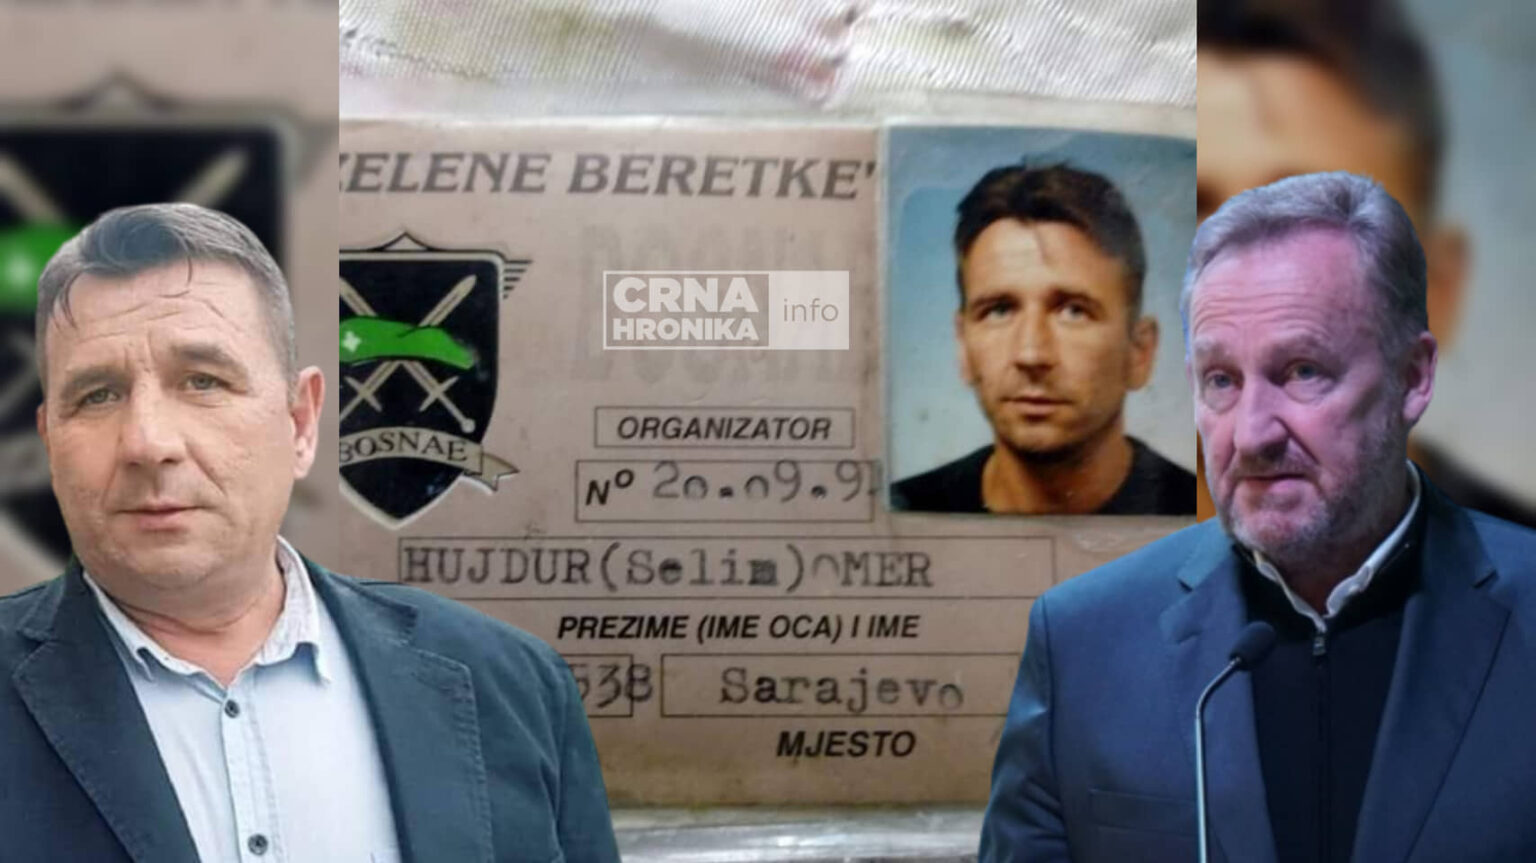 Oficir Armije Bosne i Hercegovine poslao važnu poruku Izetbegoviću: BiH su odbranile bosanskohercegovačke patriote, a ne SDA, Life.ba